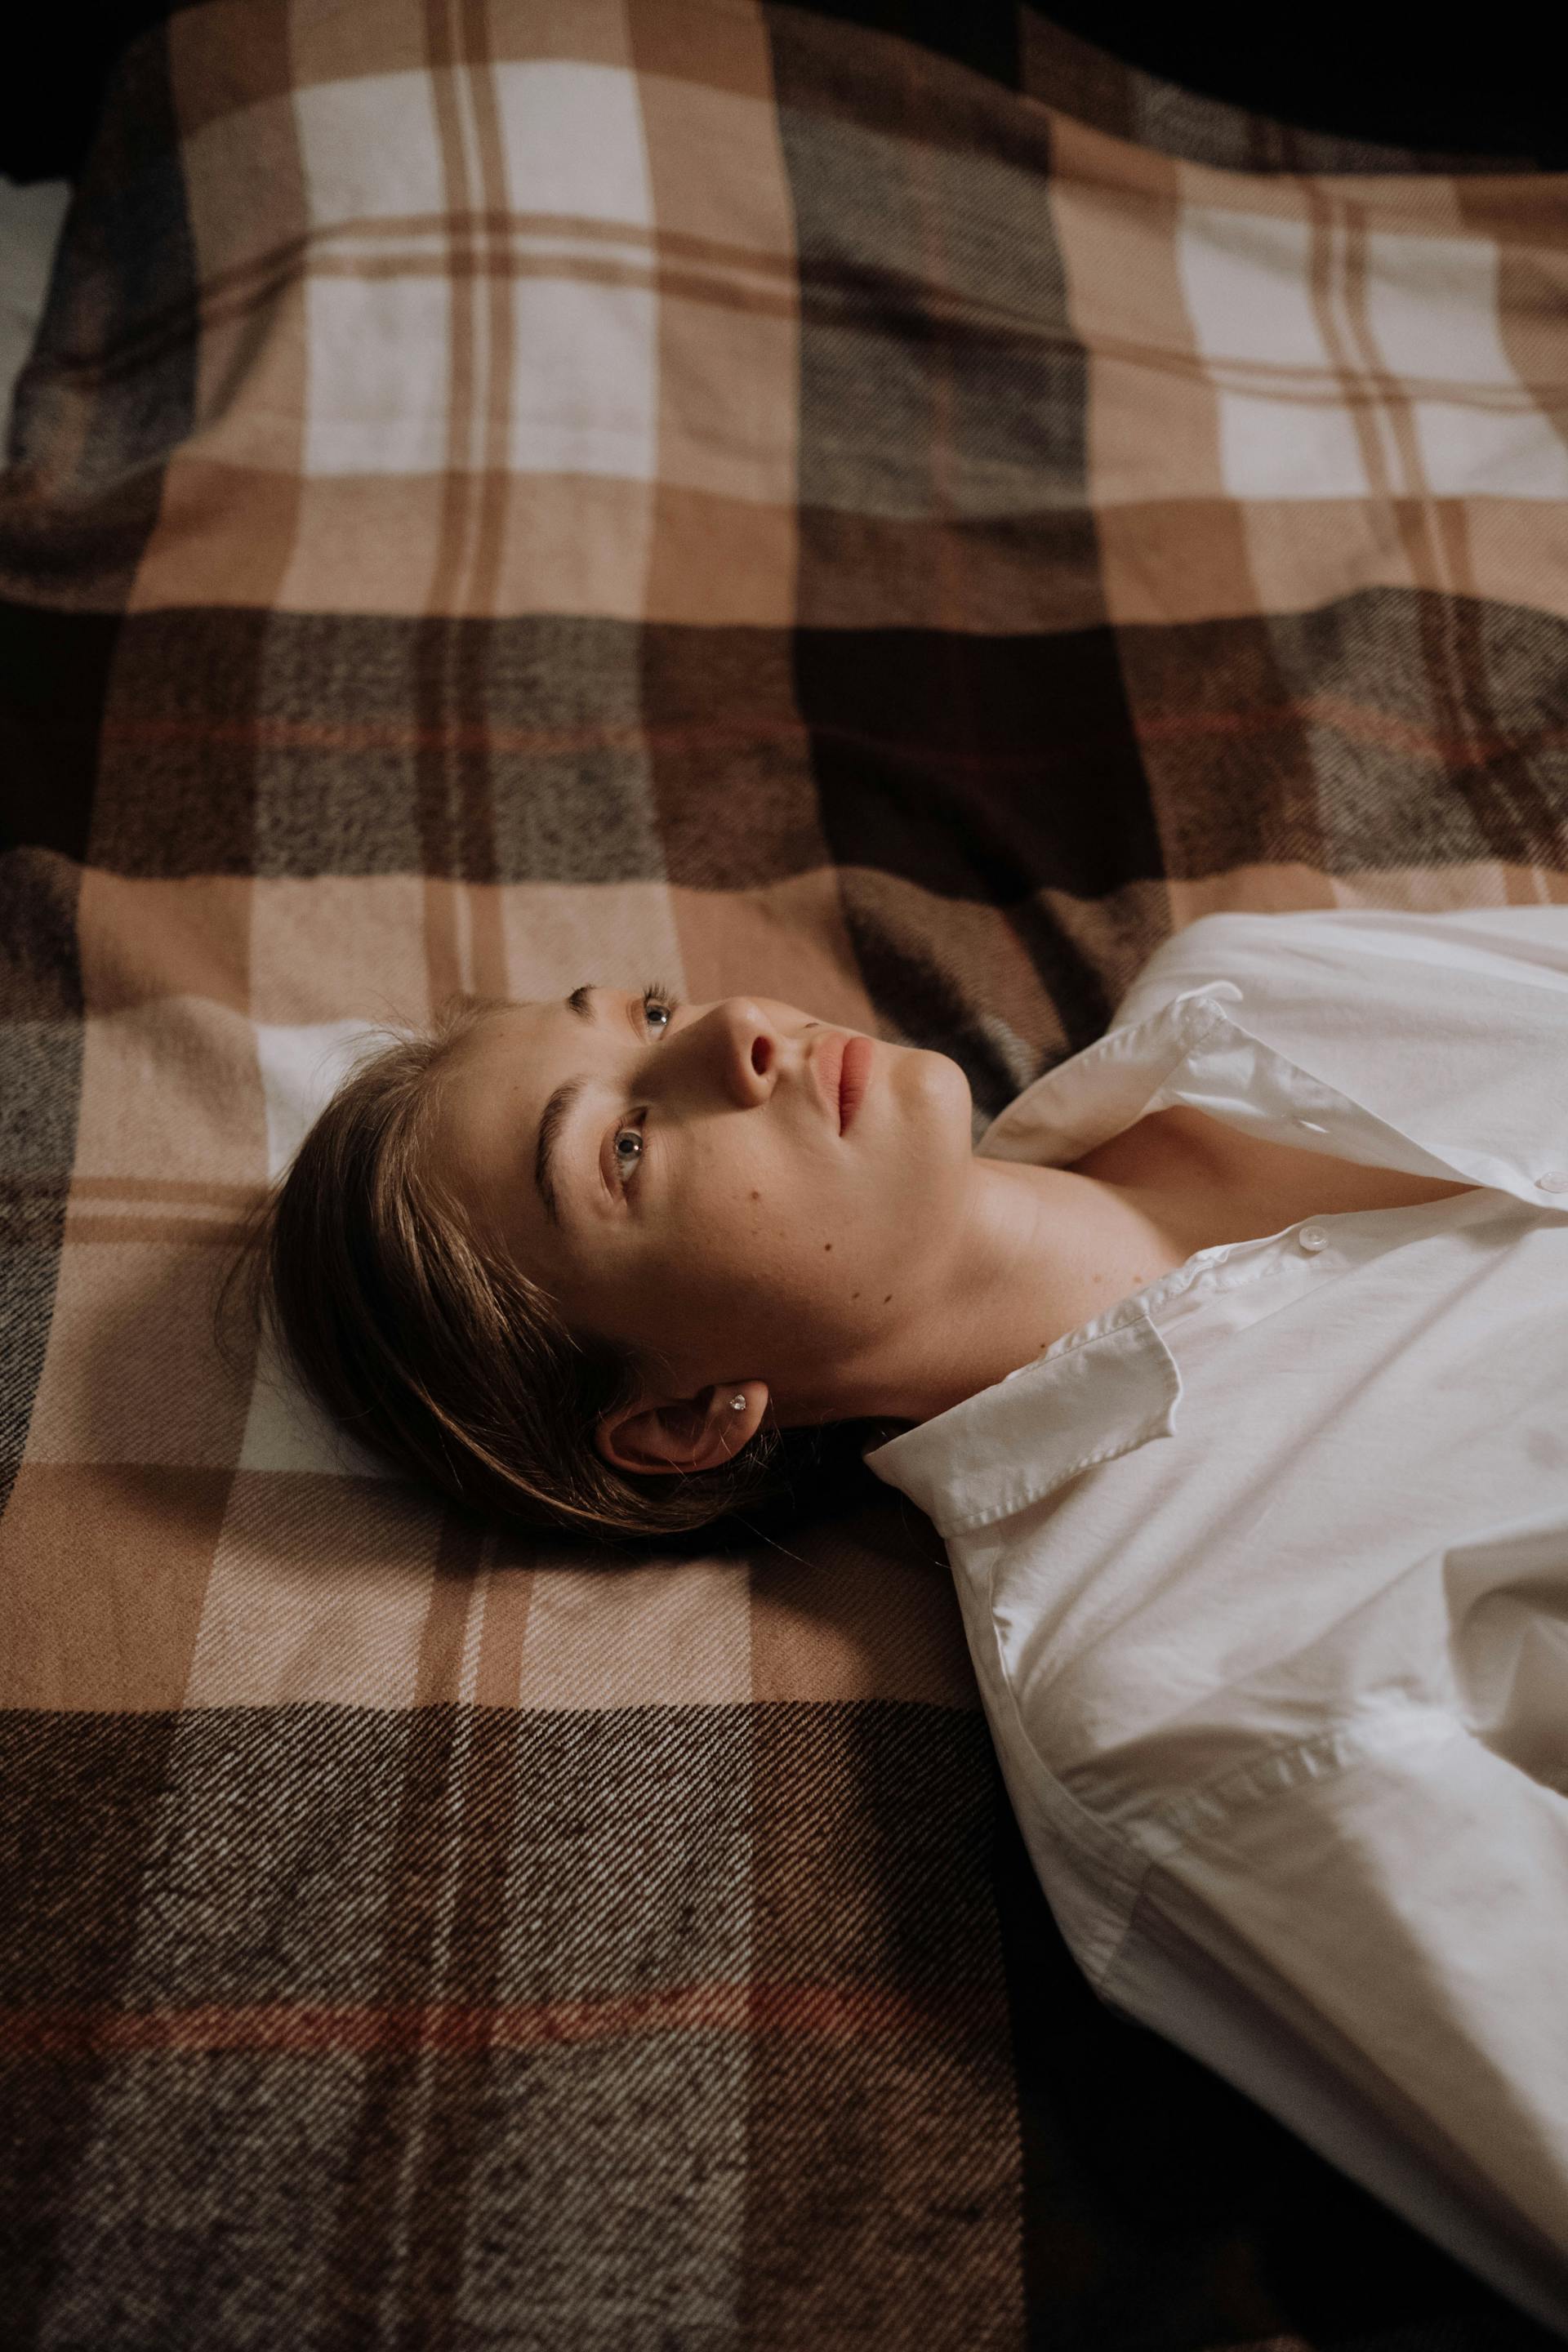 Une femme allongée éveillée dans son lit | Source : Pexels